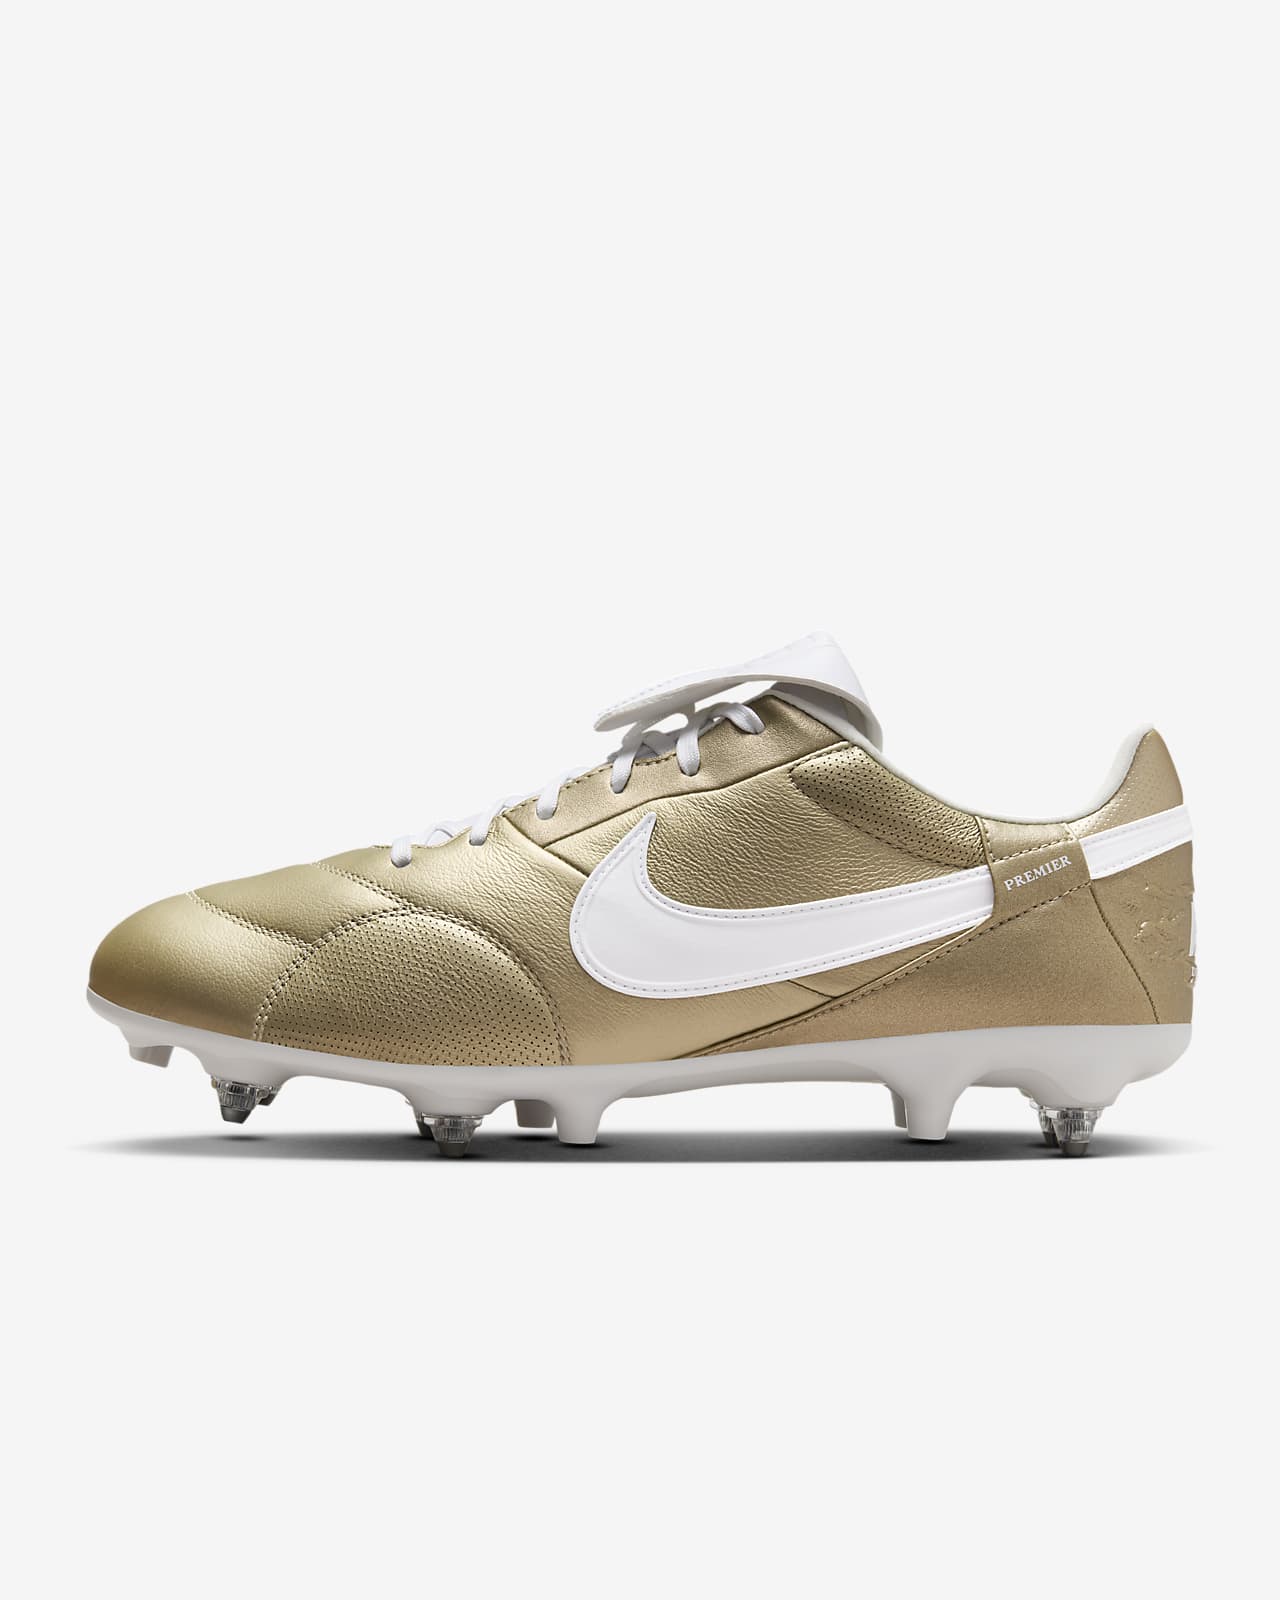 Fotbollssko för vått gräs med lågt skaft NikePremier 3